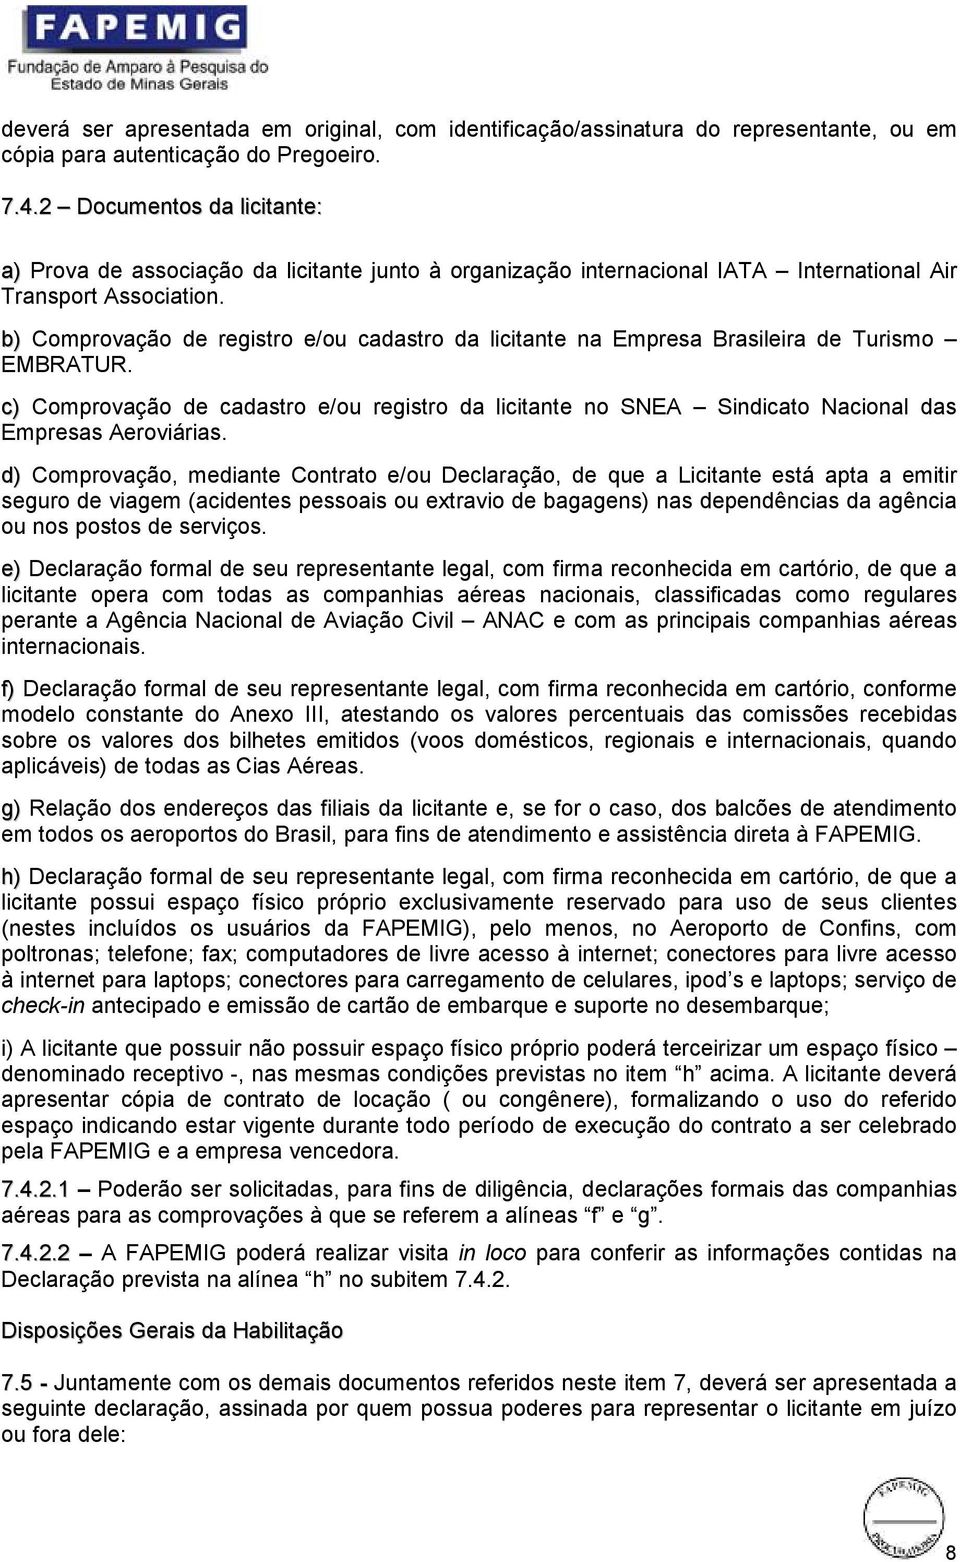 b) Comprovação de registro e/ou cadastro da licitante na Empresa Brasileira de Turismo EMBRATUR.